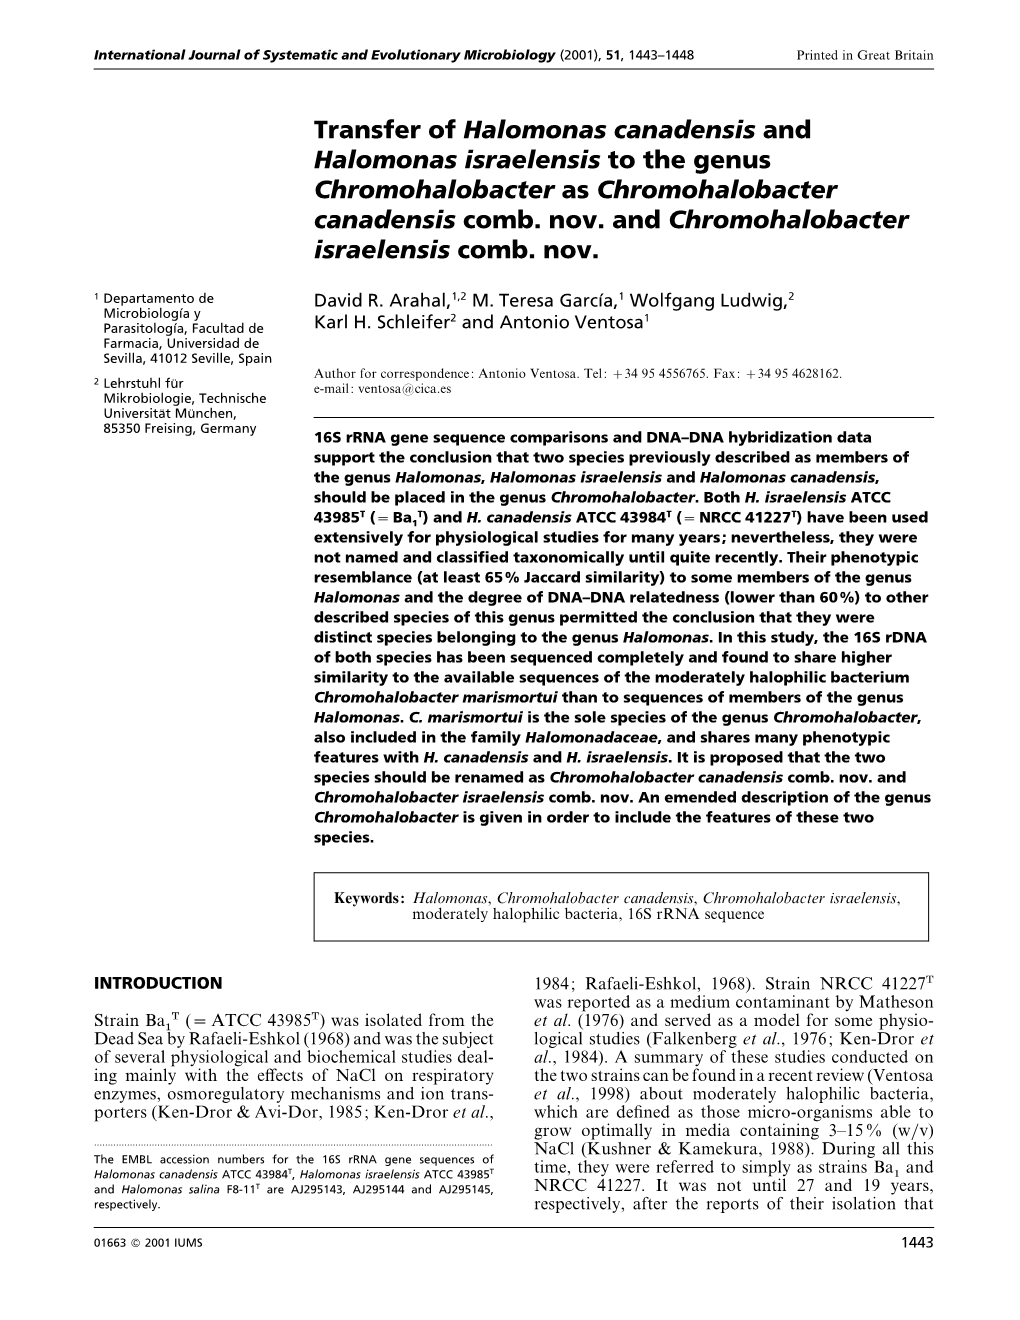 Transfer of Halomonas Canadensis and Halomonas Israelensis to the Genus Chromohalobacter As Chromohalobacter Canadensis Comb